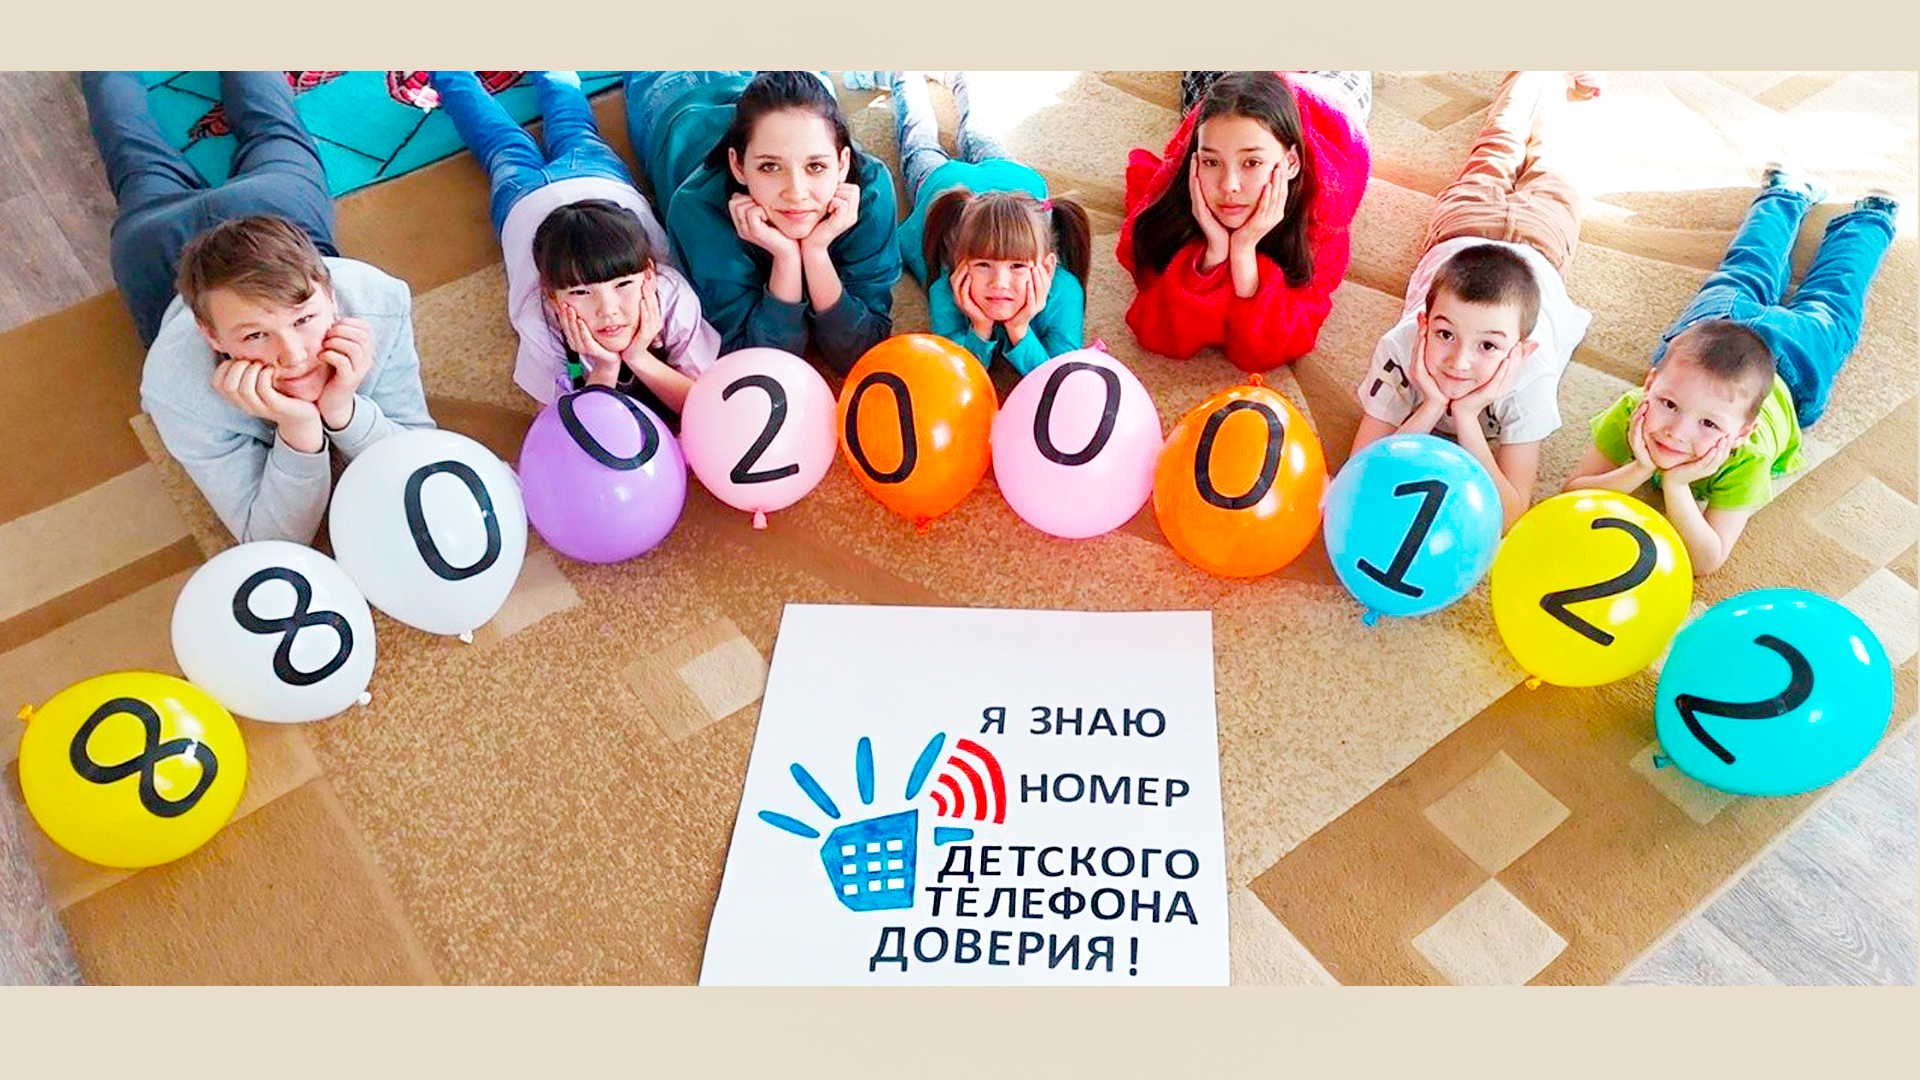 Более 300 новых идей по продвижению детского телефона доверия 8 800 2000 122 были представлены на Всероссийский конкурс информационно-просветительских материалов 